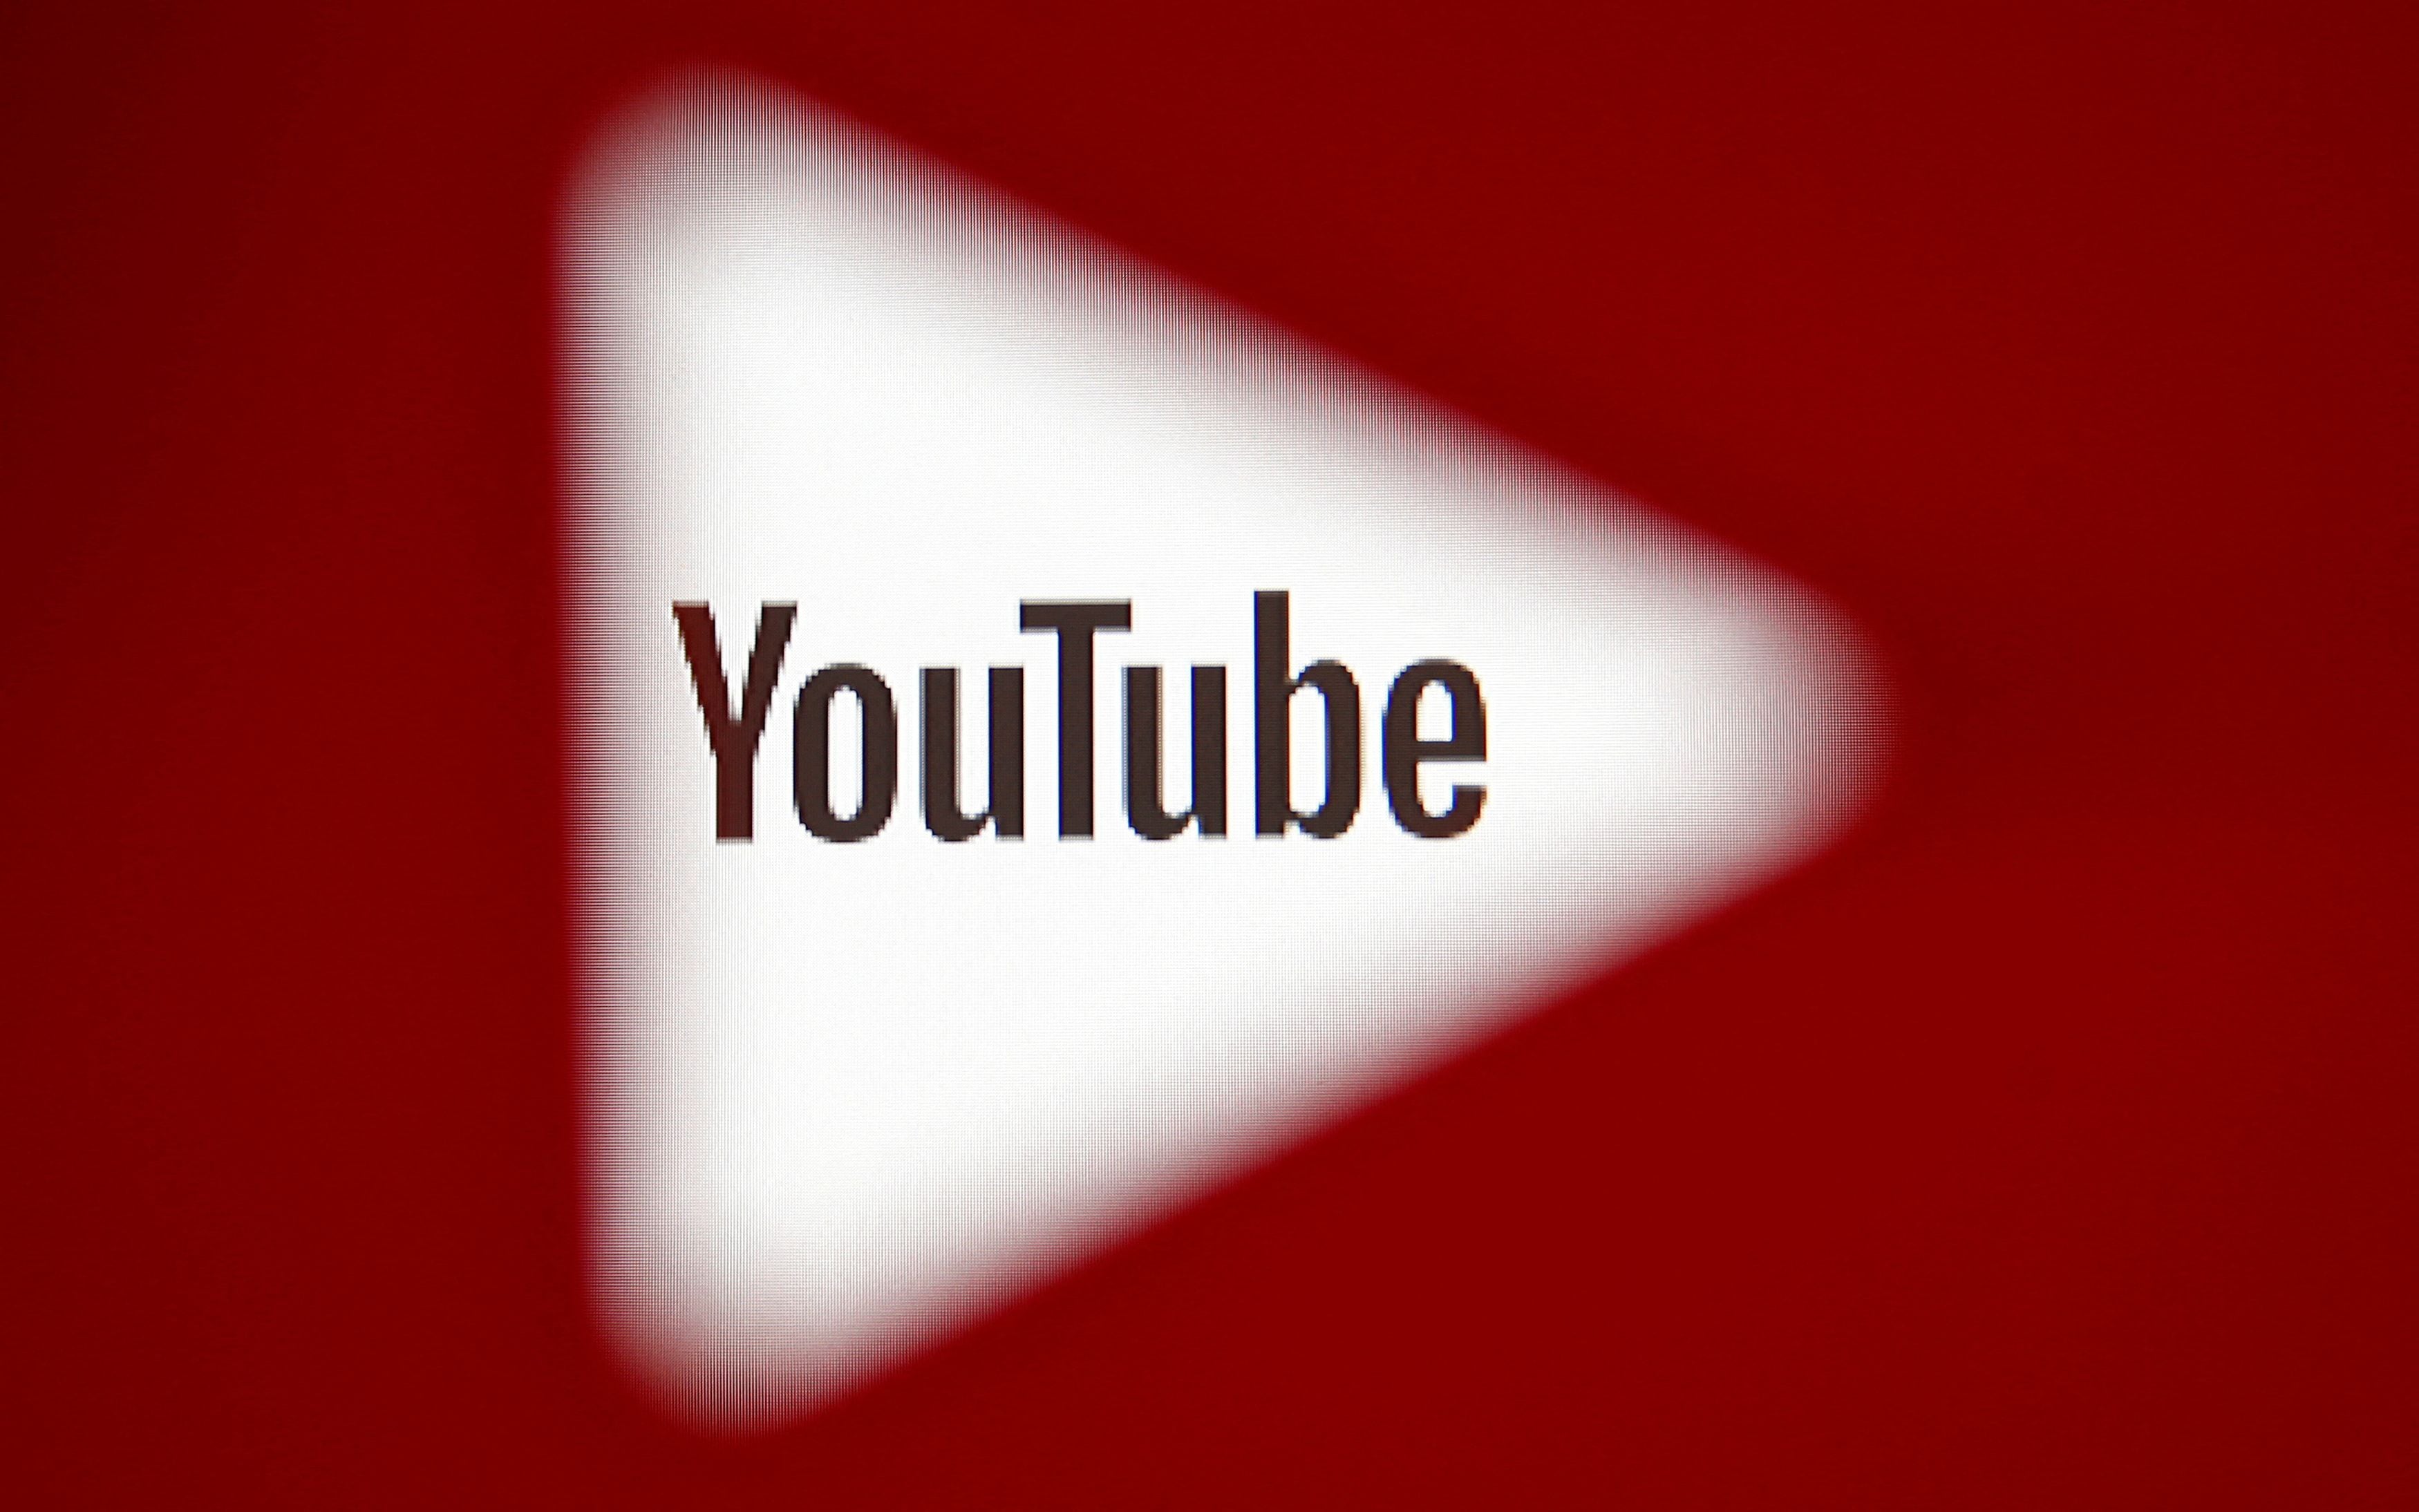 YouTube le pide a sus creadores que sean originales y respeten los derechos de autor para que puedan obtener ganancias. (REUTERS)